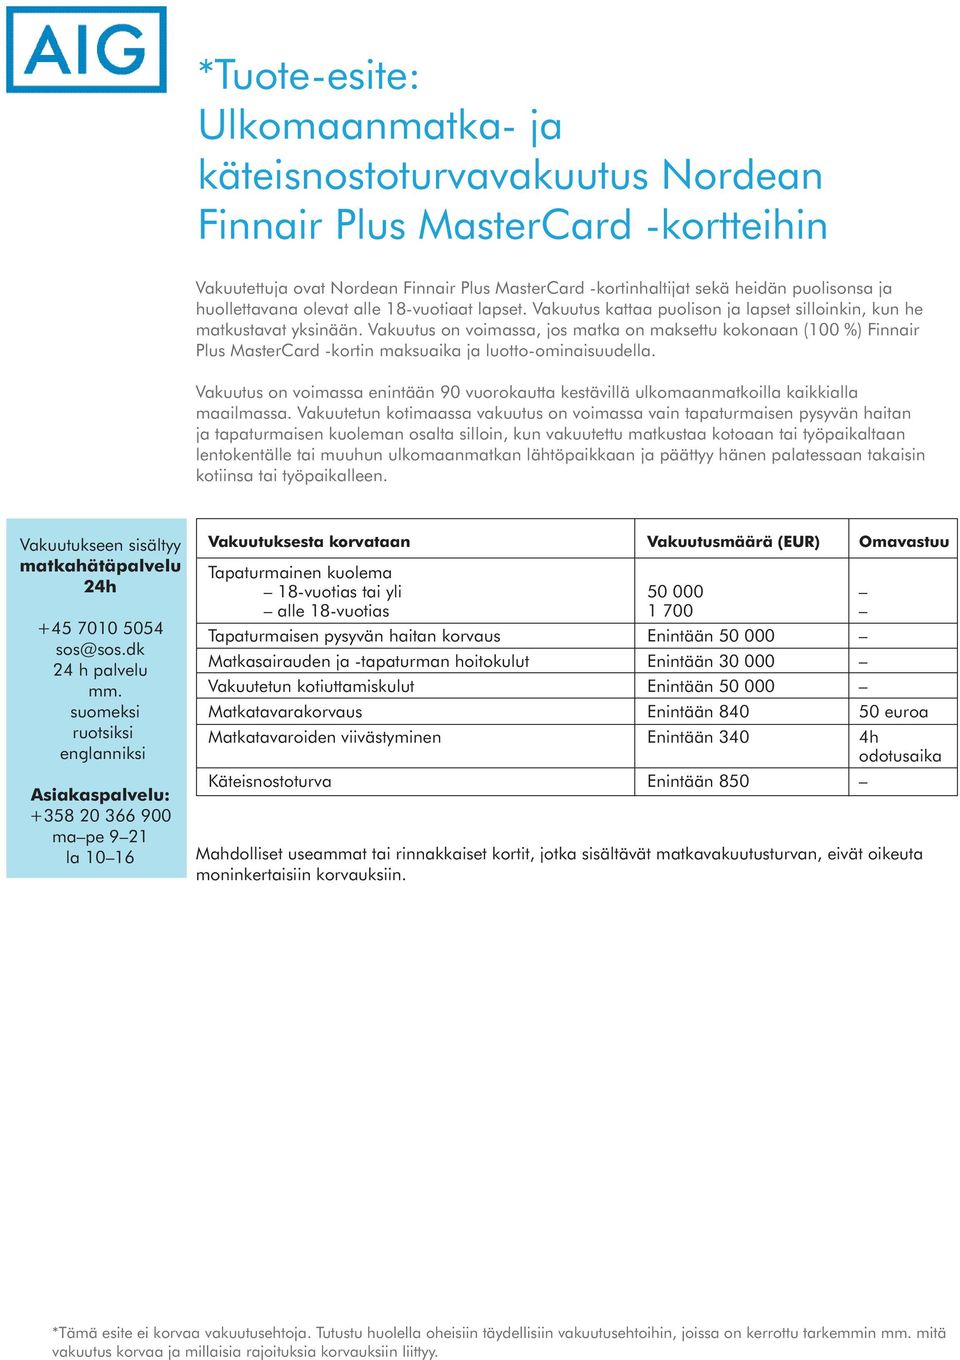 Vakuutus on voimassa, jos matka on maksettu kokonaan (100 %) Finnair Plus MasterCard -kortin maksuaika ja luotto-ominaisuudella.